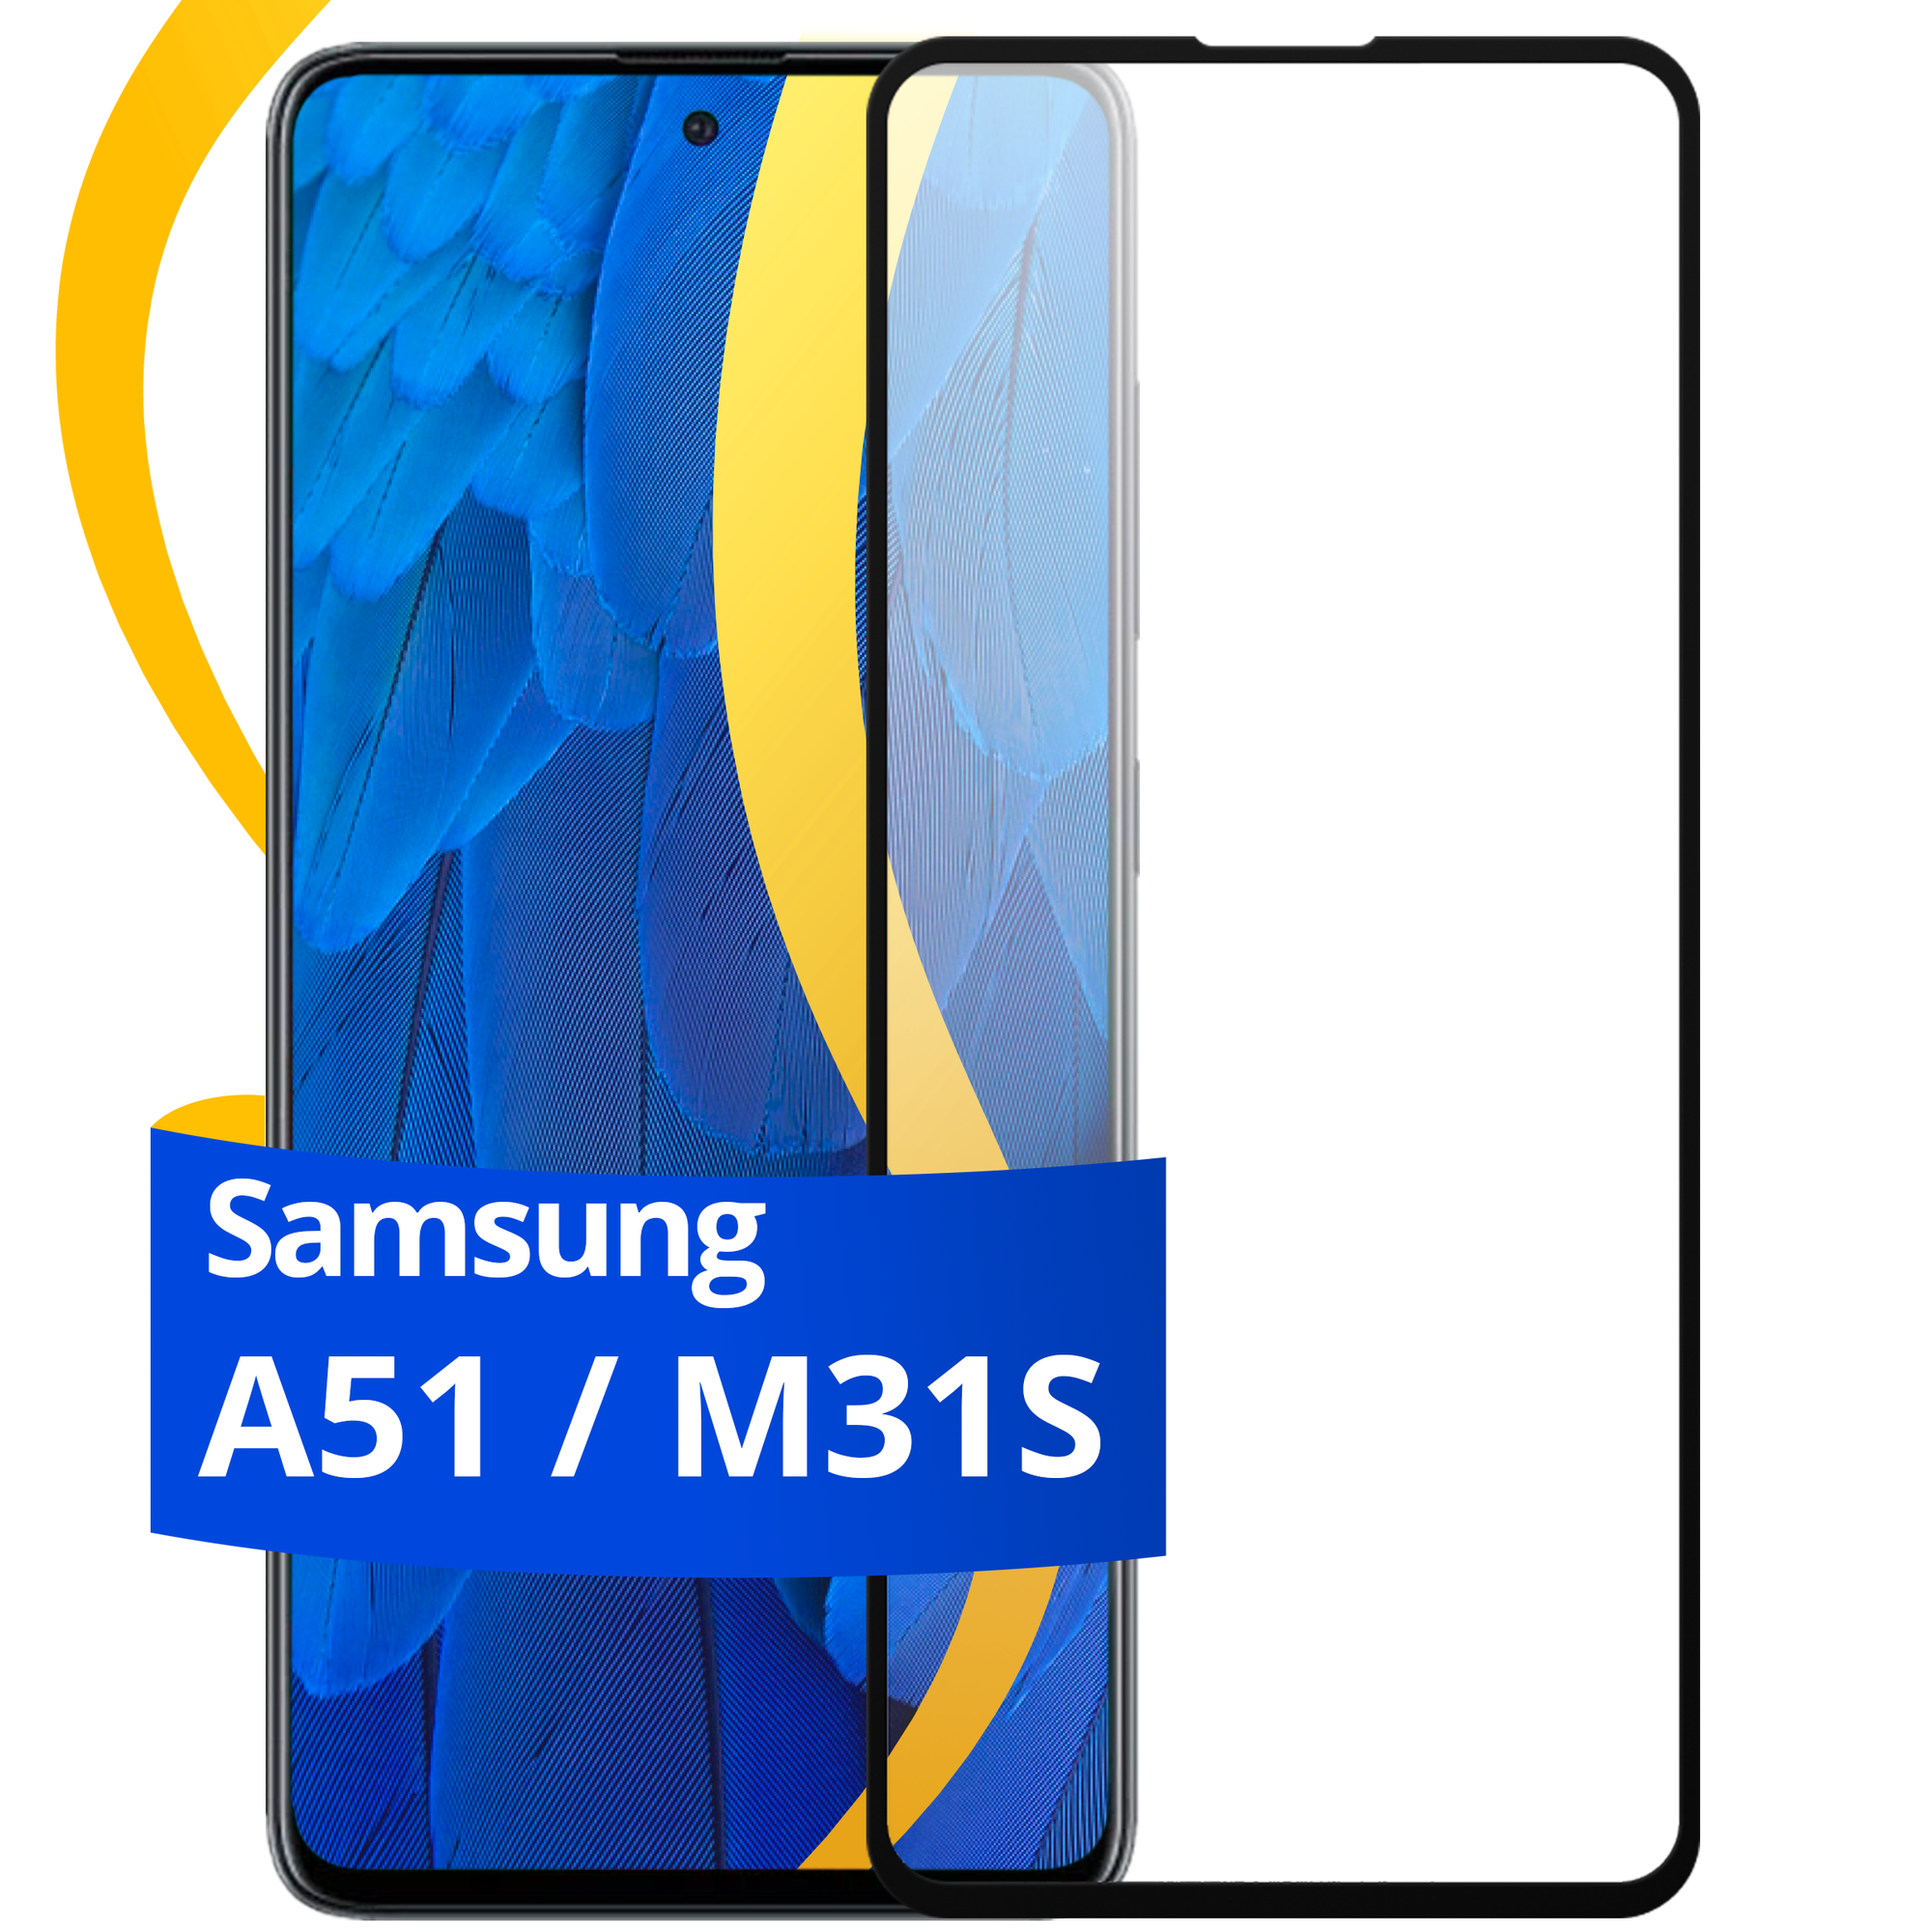 Комплект 2 шт защитное стекло для телефона Samsung Galaxy A51 и M31S / Набор противоударных стекол на смартфон Самсунг Галакси А51 и М31С